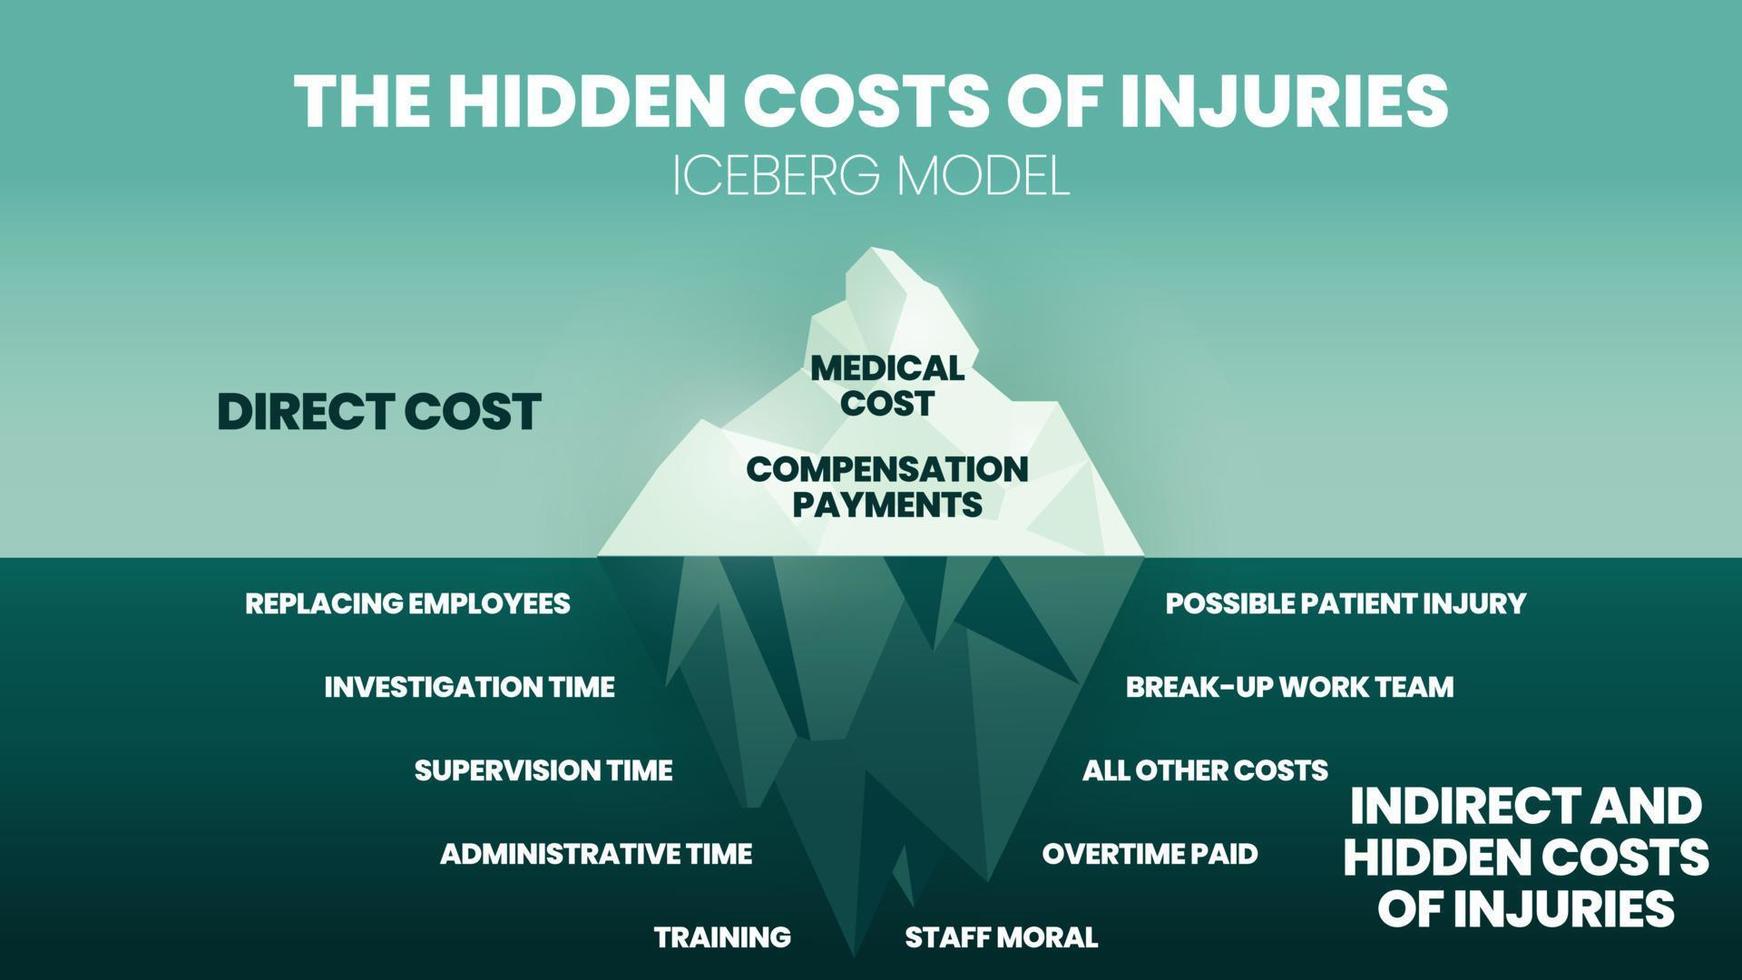 le vecteur du modèle d'iceberg et l'illustration des coûts cachés des blessures ont des soins médicaux et une indemnisation à la surface. le sous-marin a des coûts indirects tels que le temps, l'équipe, la formation et le moral.